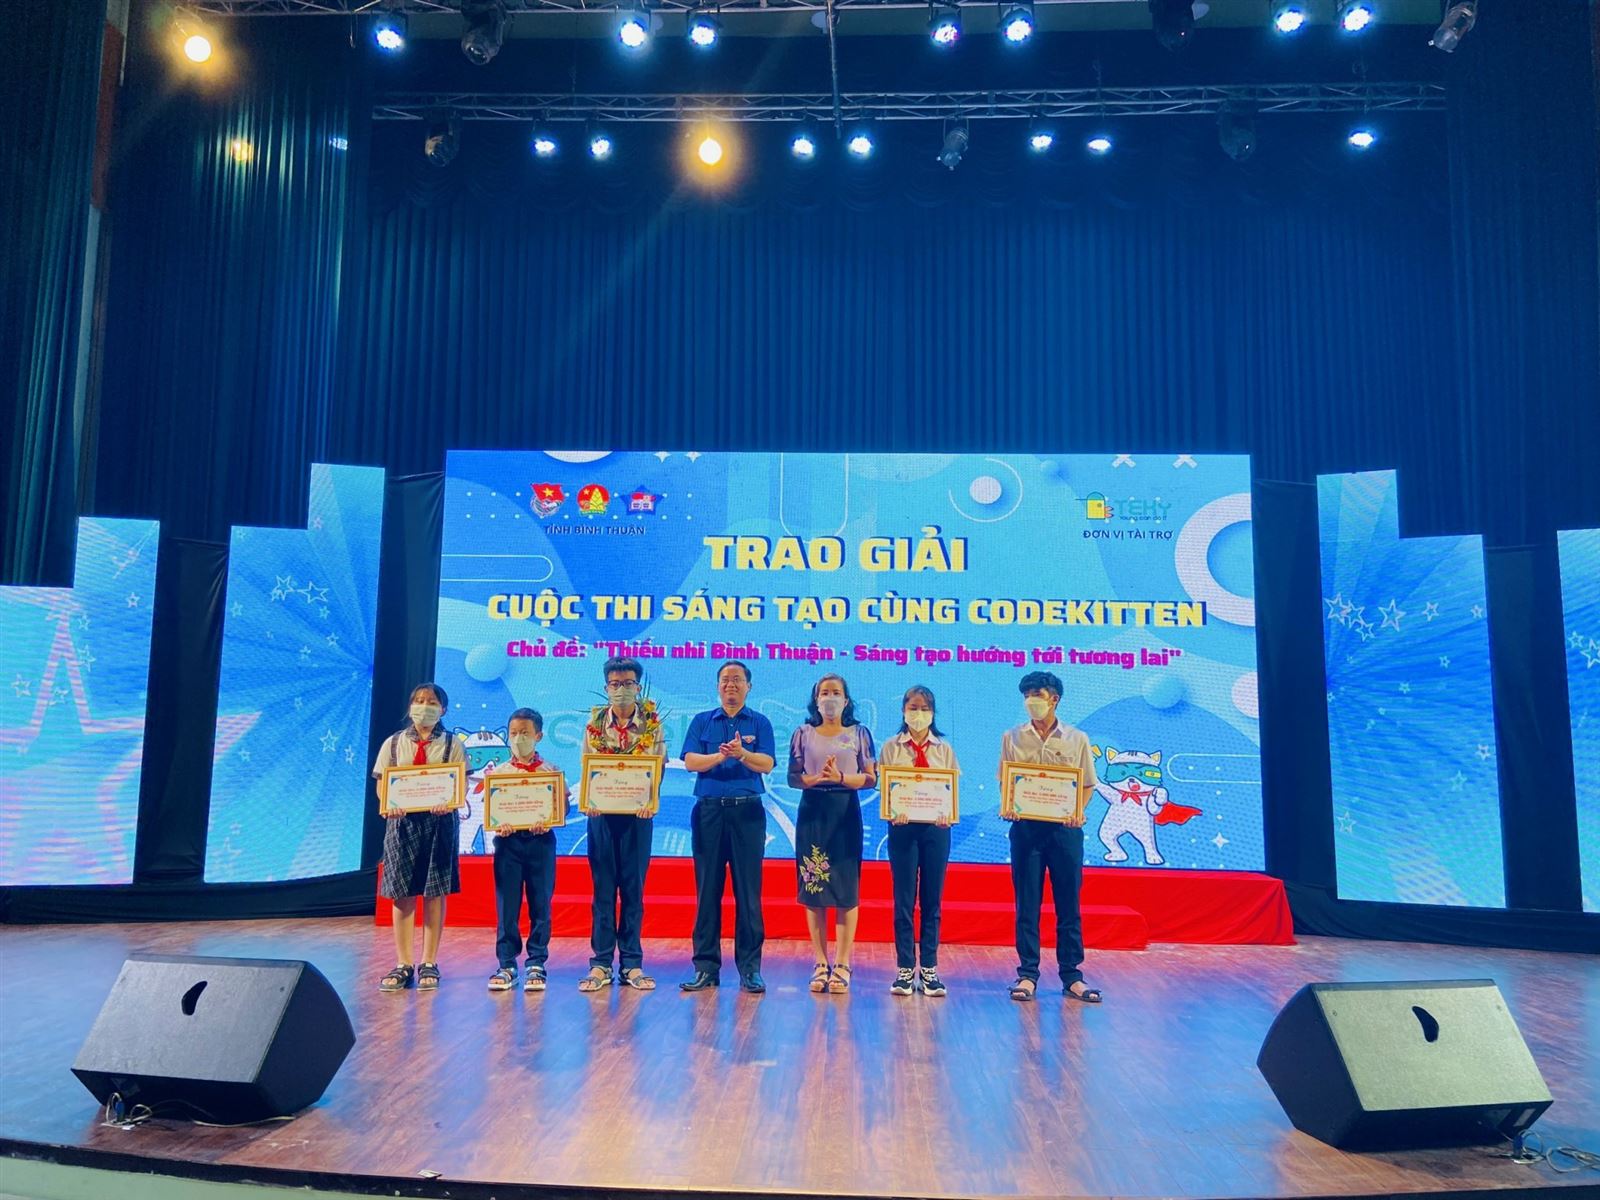 Tỉnh Đoàn Bình Thuận trao giải cuộc thi sáng tạo cùng CodeKitten   chủ đề “Thiếu nhi Bình Thuận – Sáng tạo hướng tới tương lai”